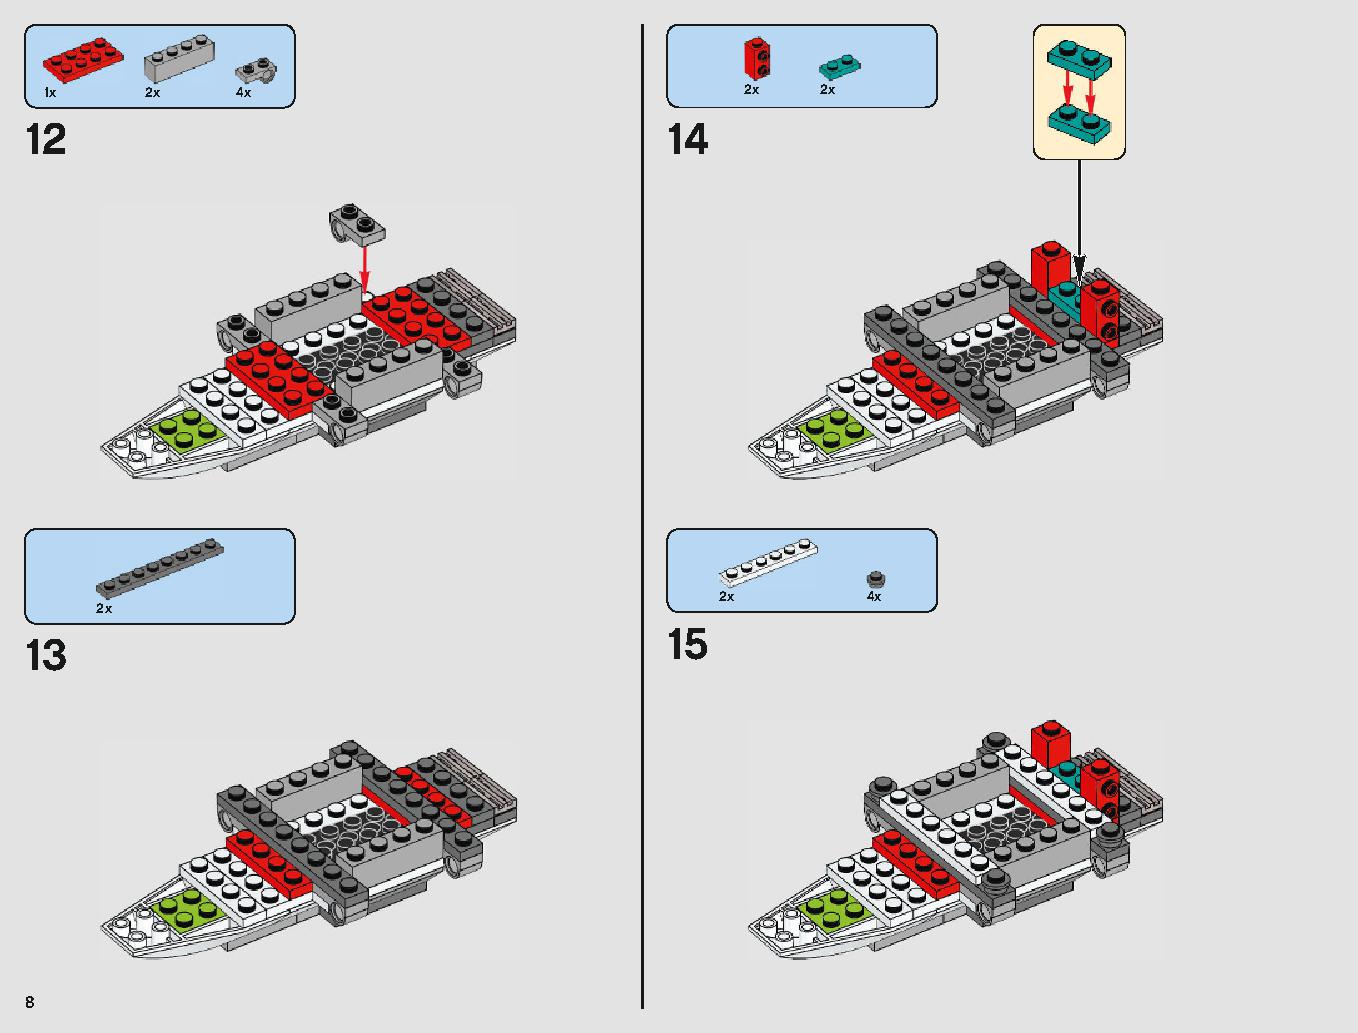 Xウィング・スターファイター 75218 レゴの商品情報 レゴの説明書・組立方法 8 page